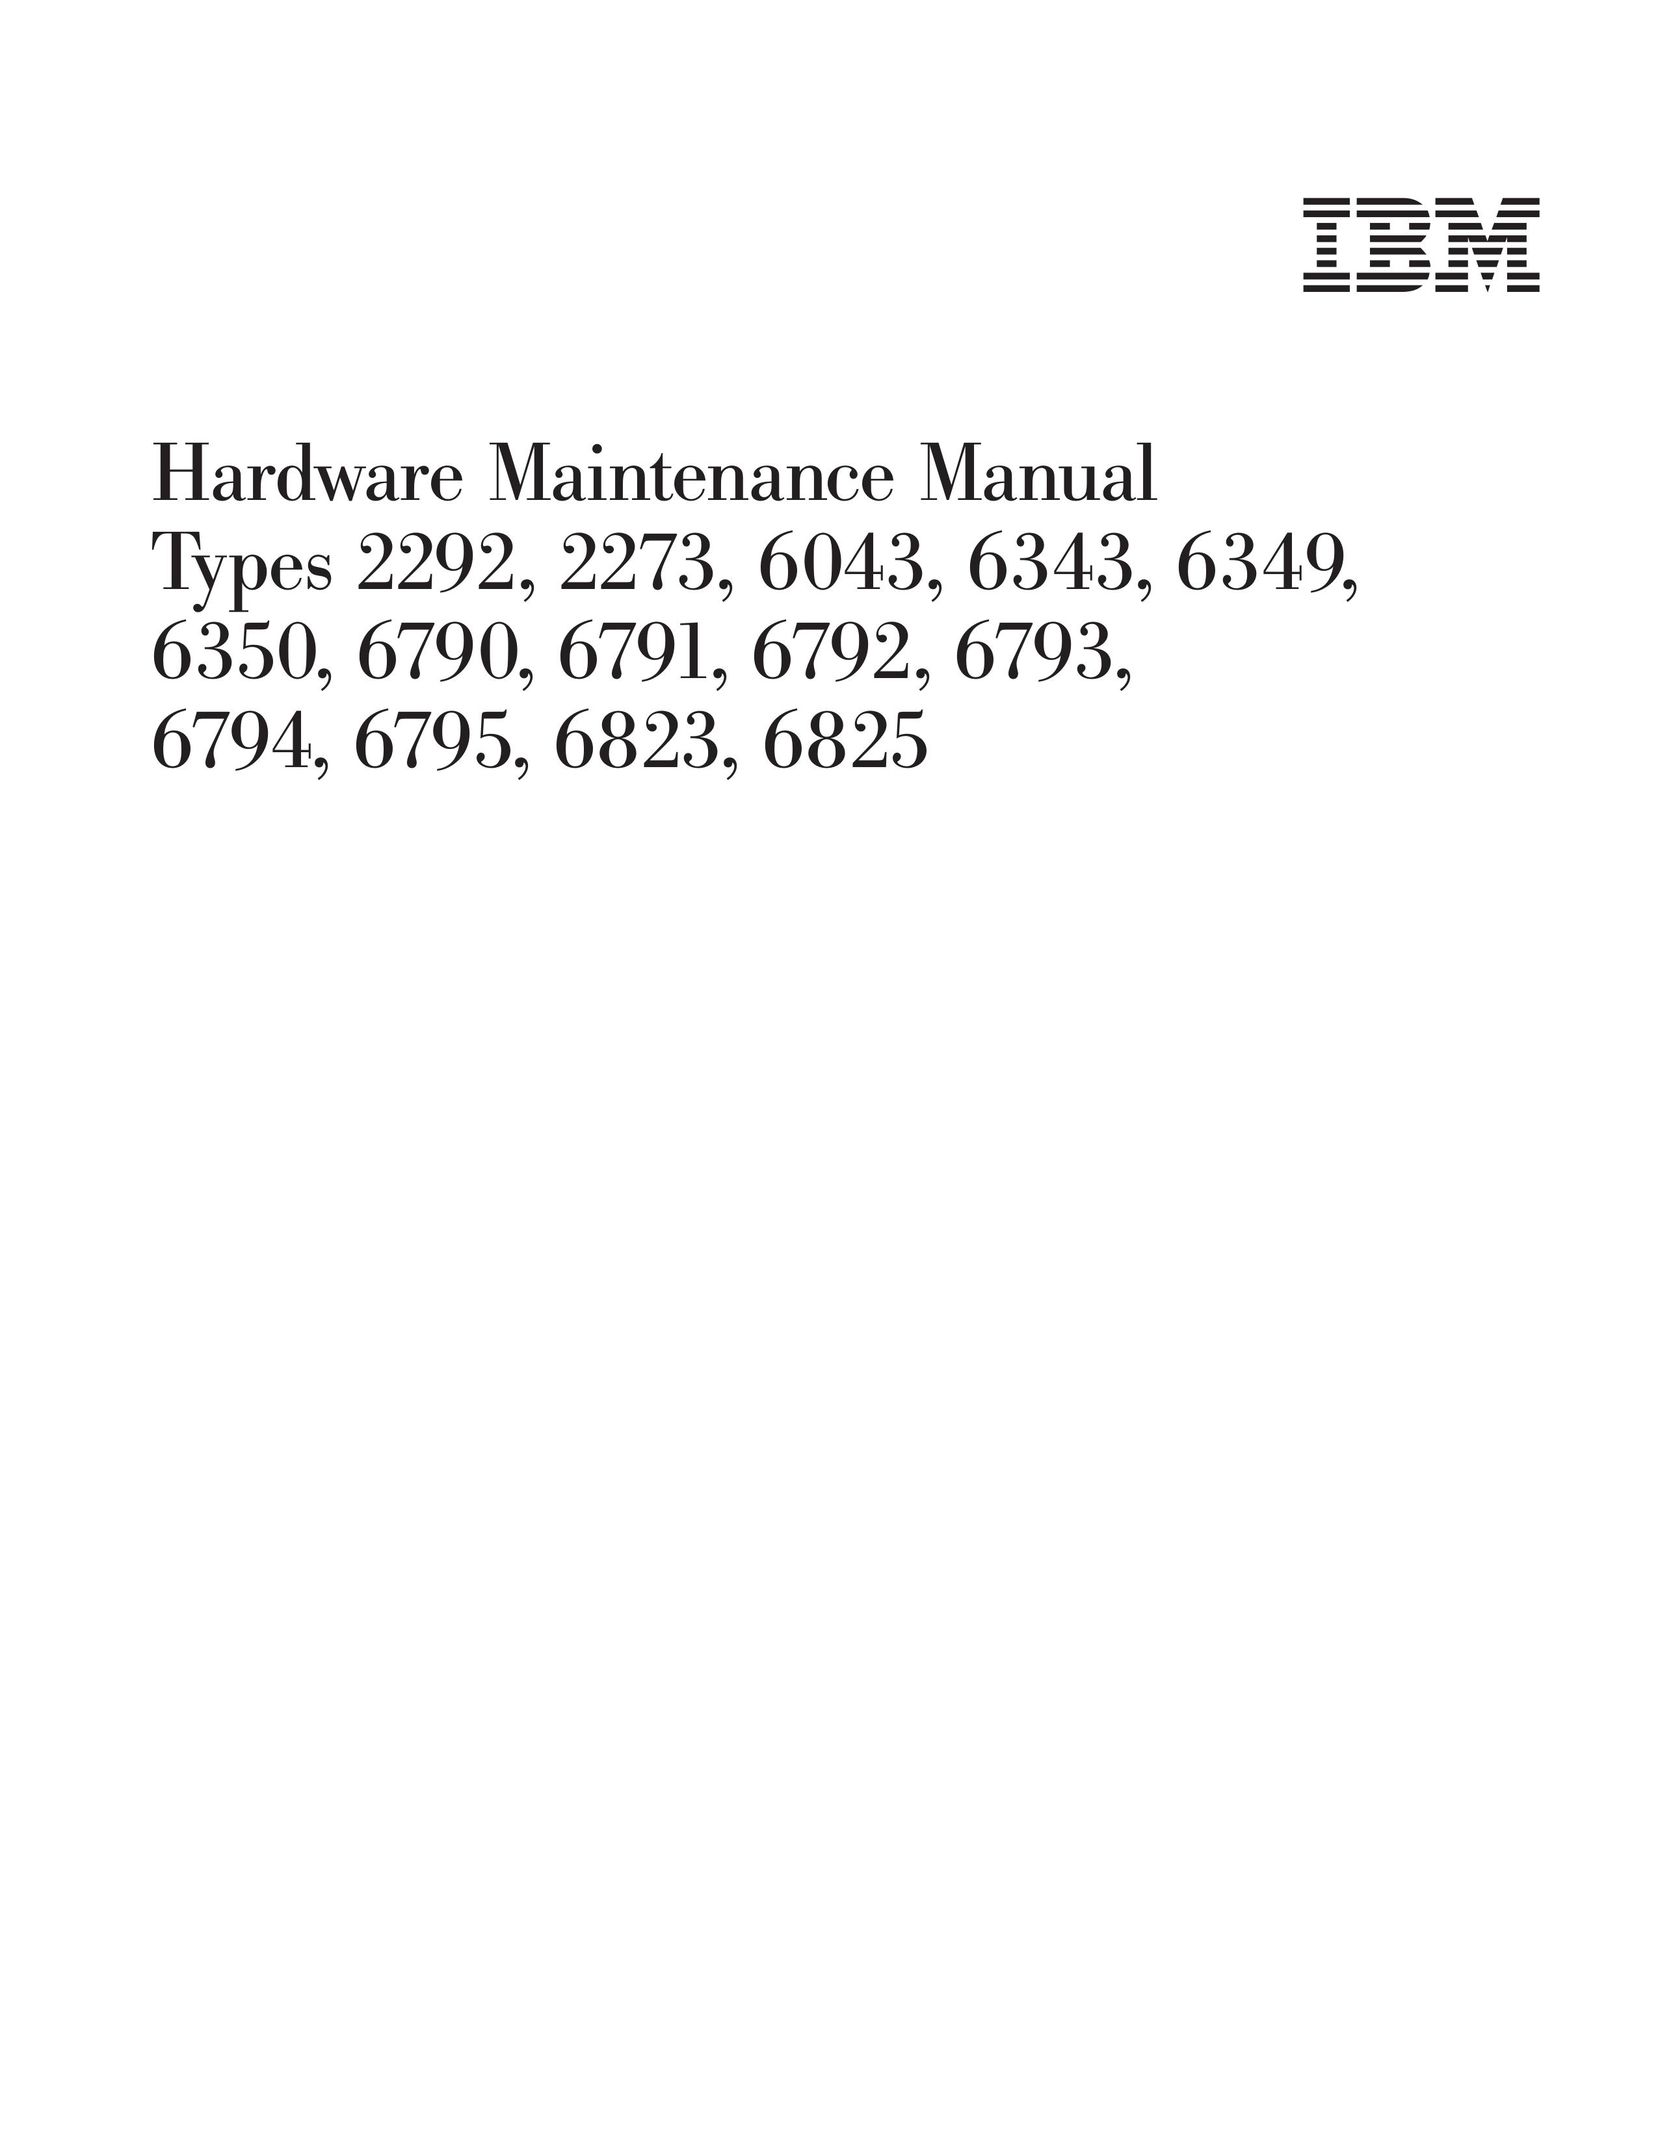 IBM 2292 Computer Hardware User Manual